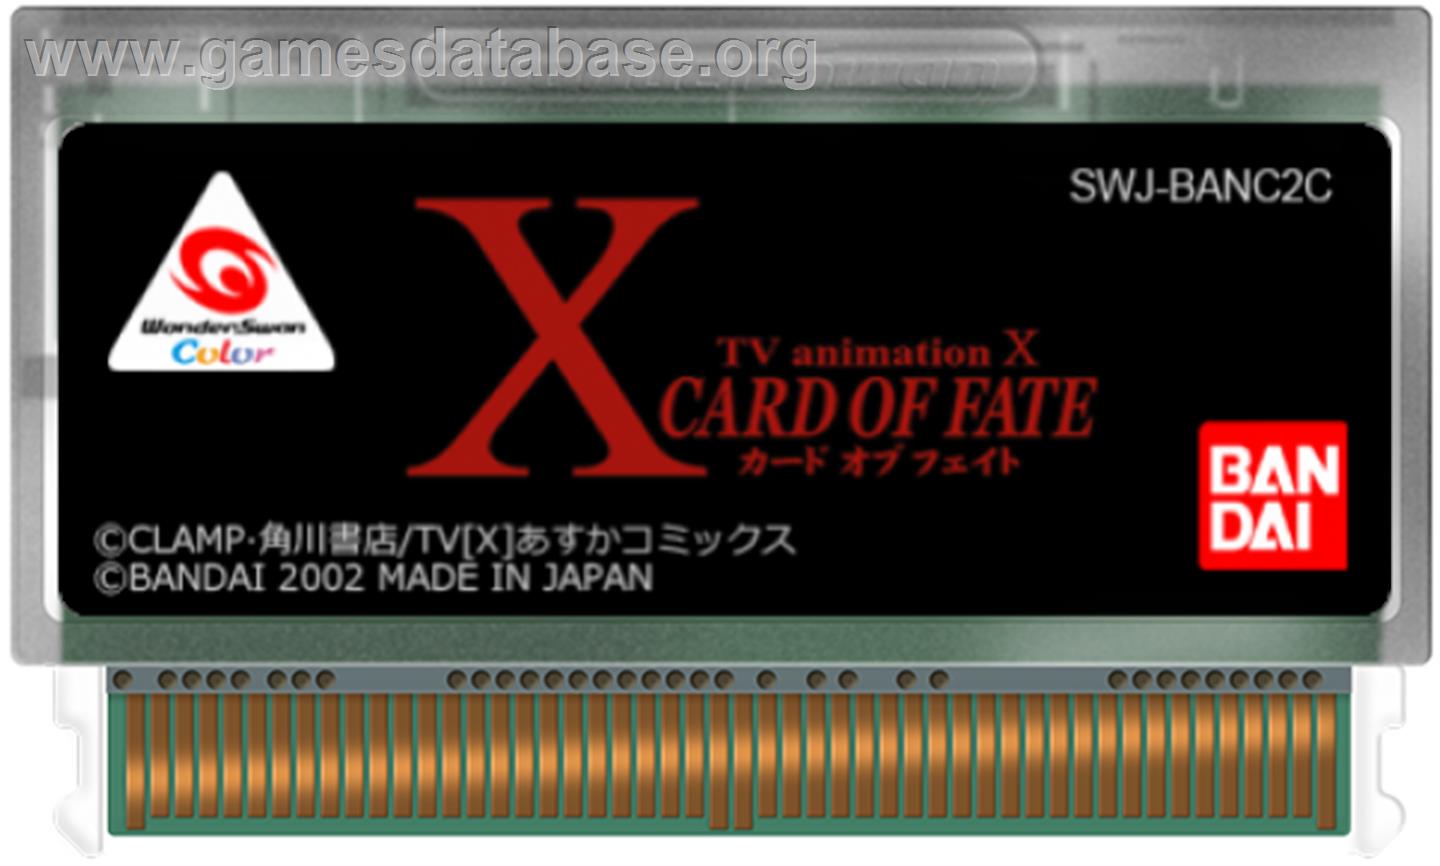 X: Card of Fate - Bandai WonderSwan Color - Artwork - Cartridge